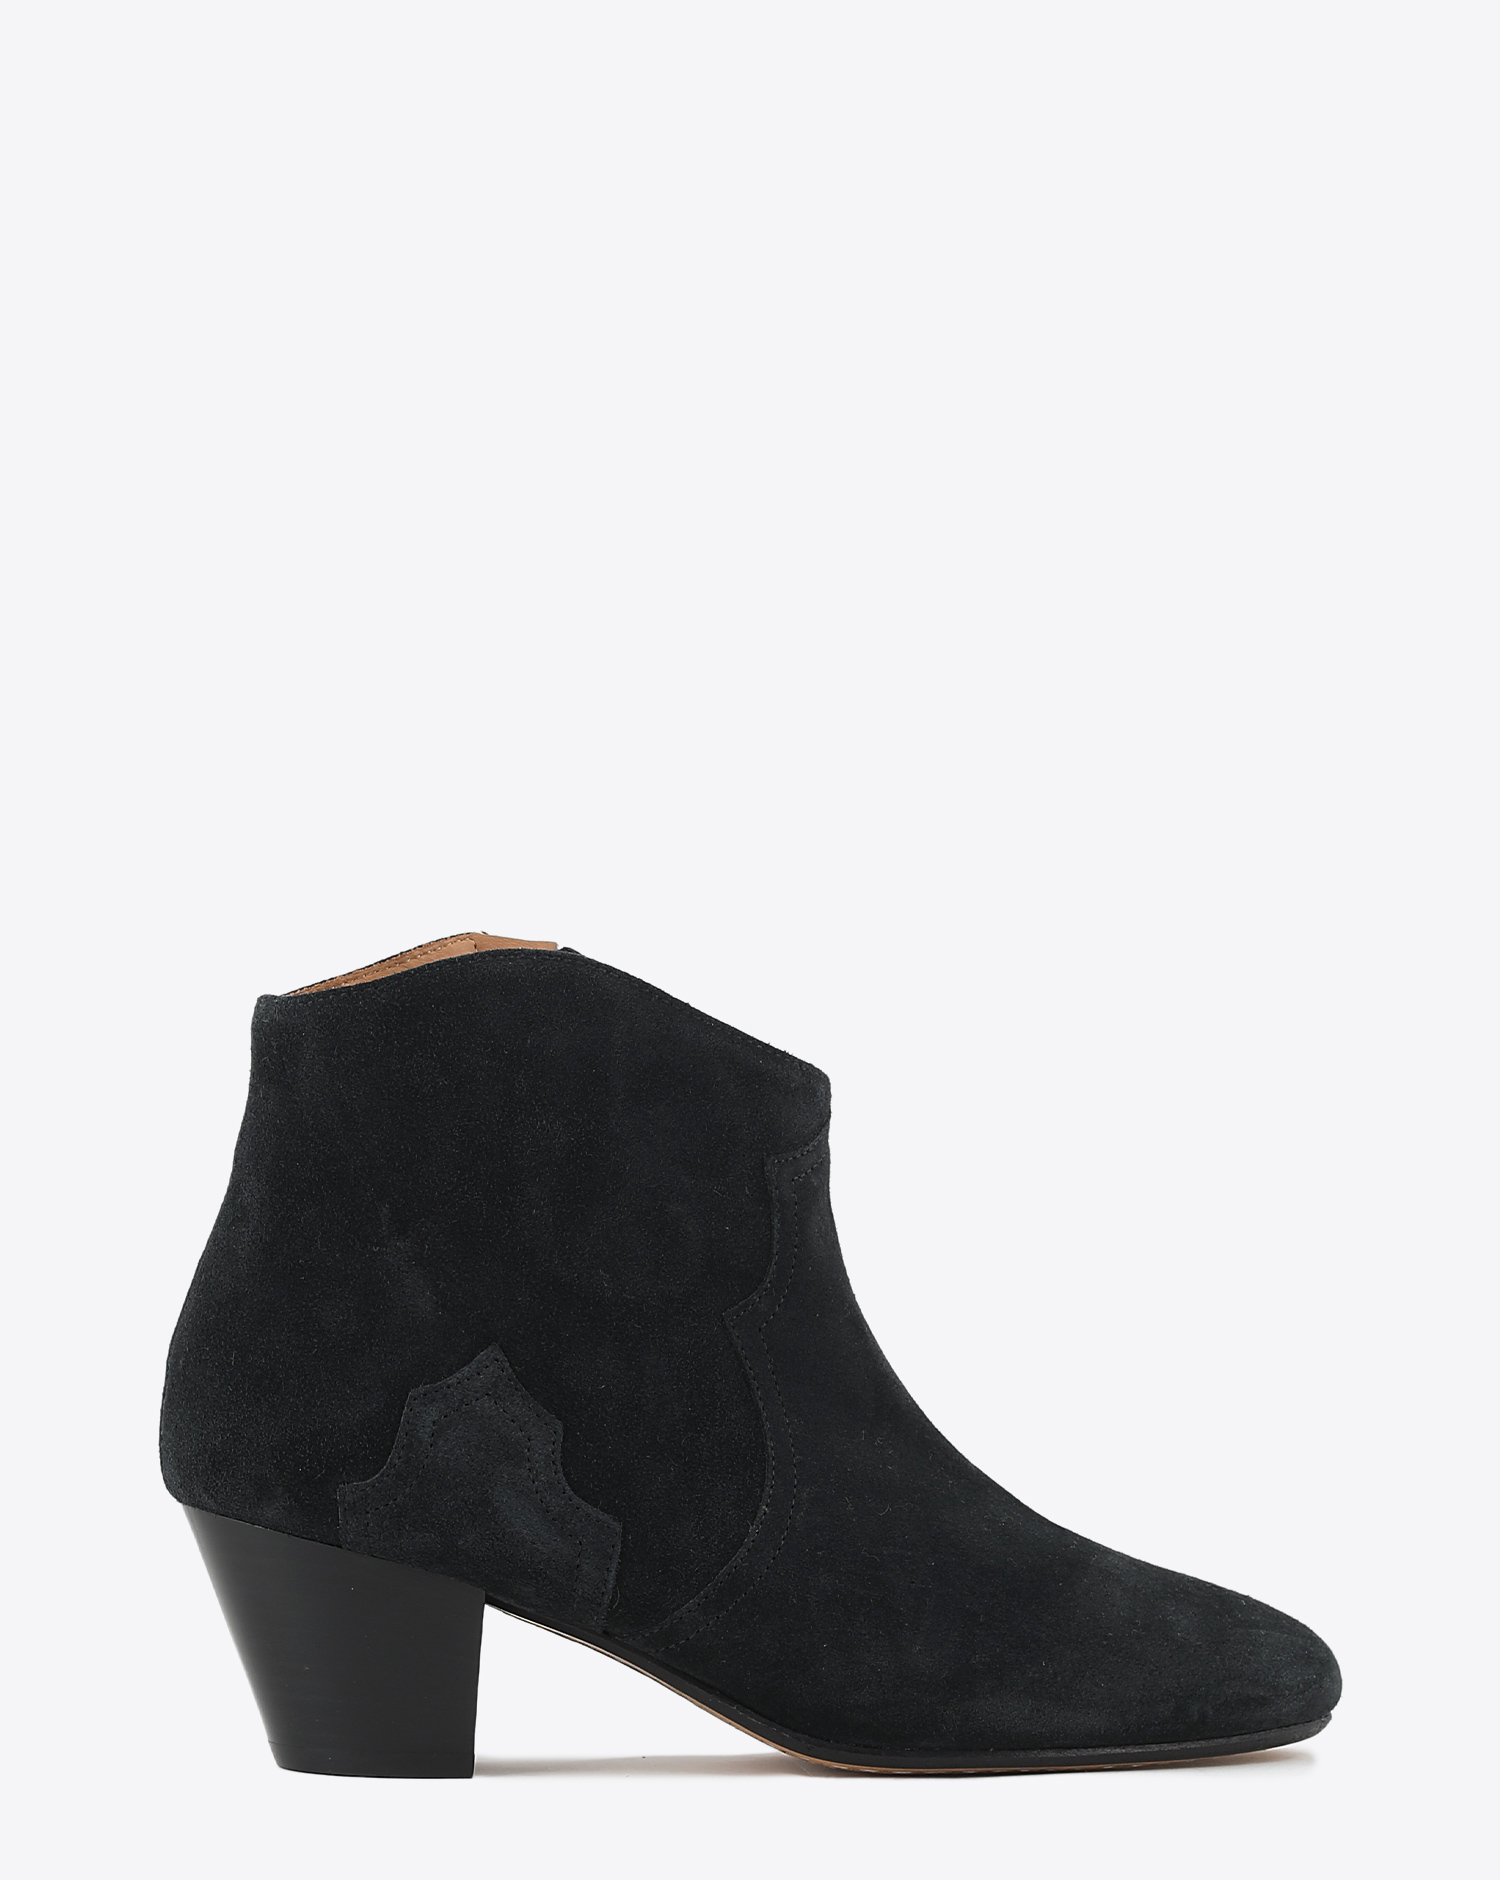 Boots à petits talons en cuir suédé noir Dicker Isabel Marant. Profil.